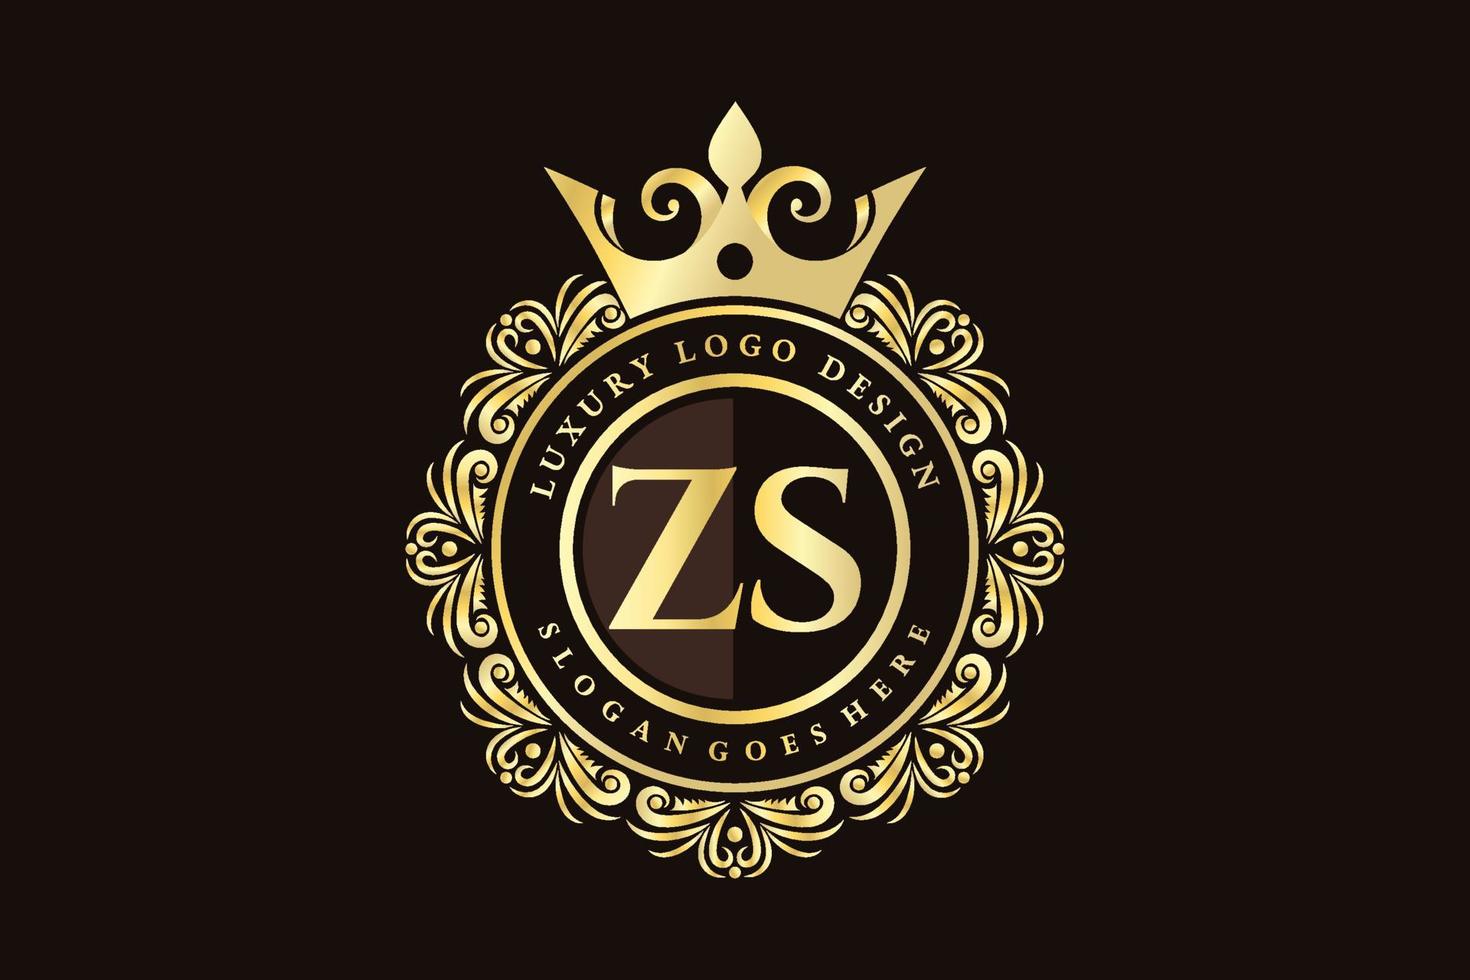 zs letra inicial oro caligráfico femenino floral dibujado a mano monograma heráldico antiguo estilo vintage diseño de logotipo de lujo vector premium